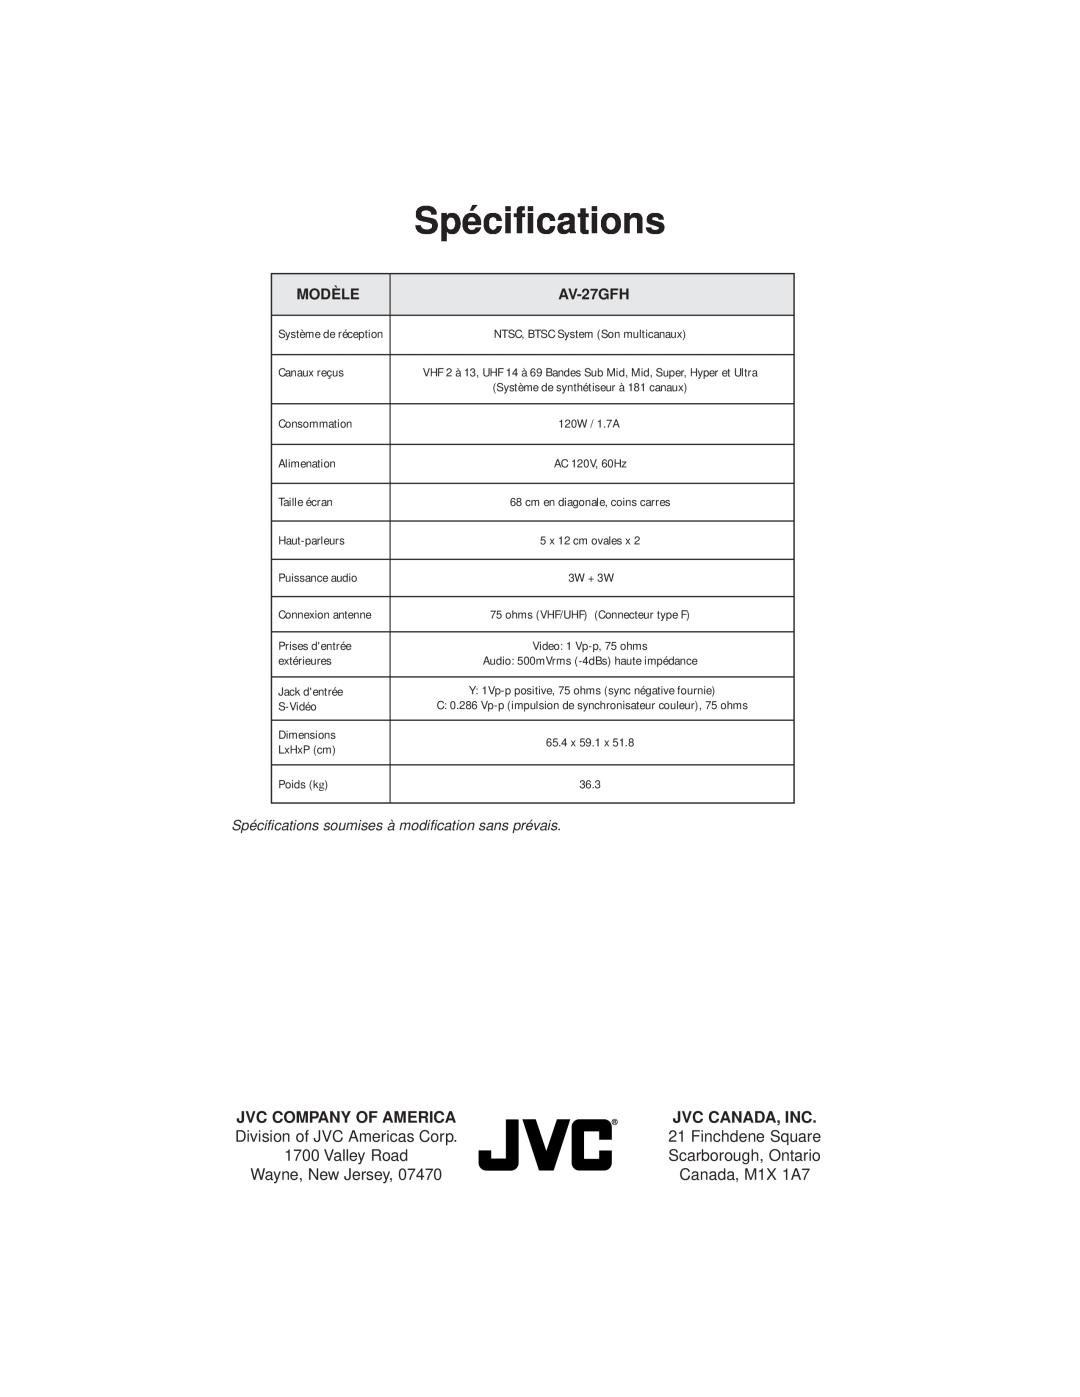 JVC AV-27GFH Spécifications, Jvc Company Of America, Jvc Canada, Inc, Modèle, Système de réception, Canaux reçus, S-Vidéo 